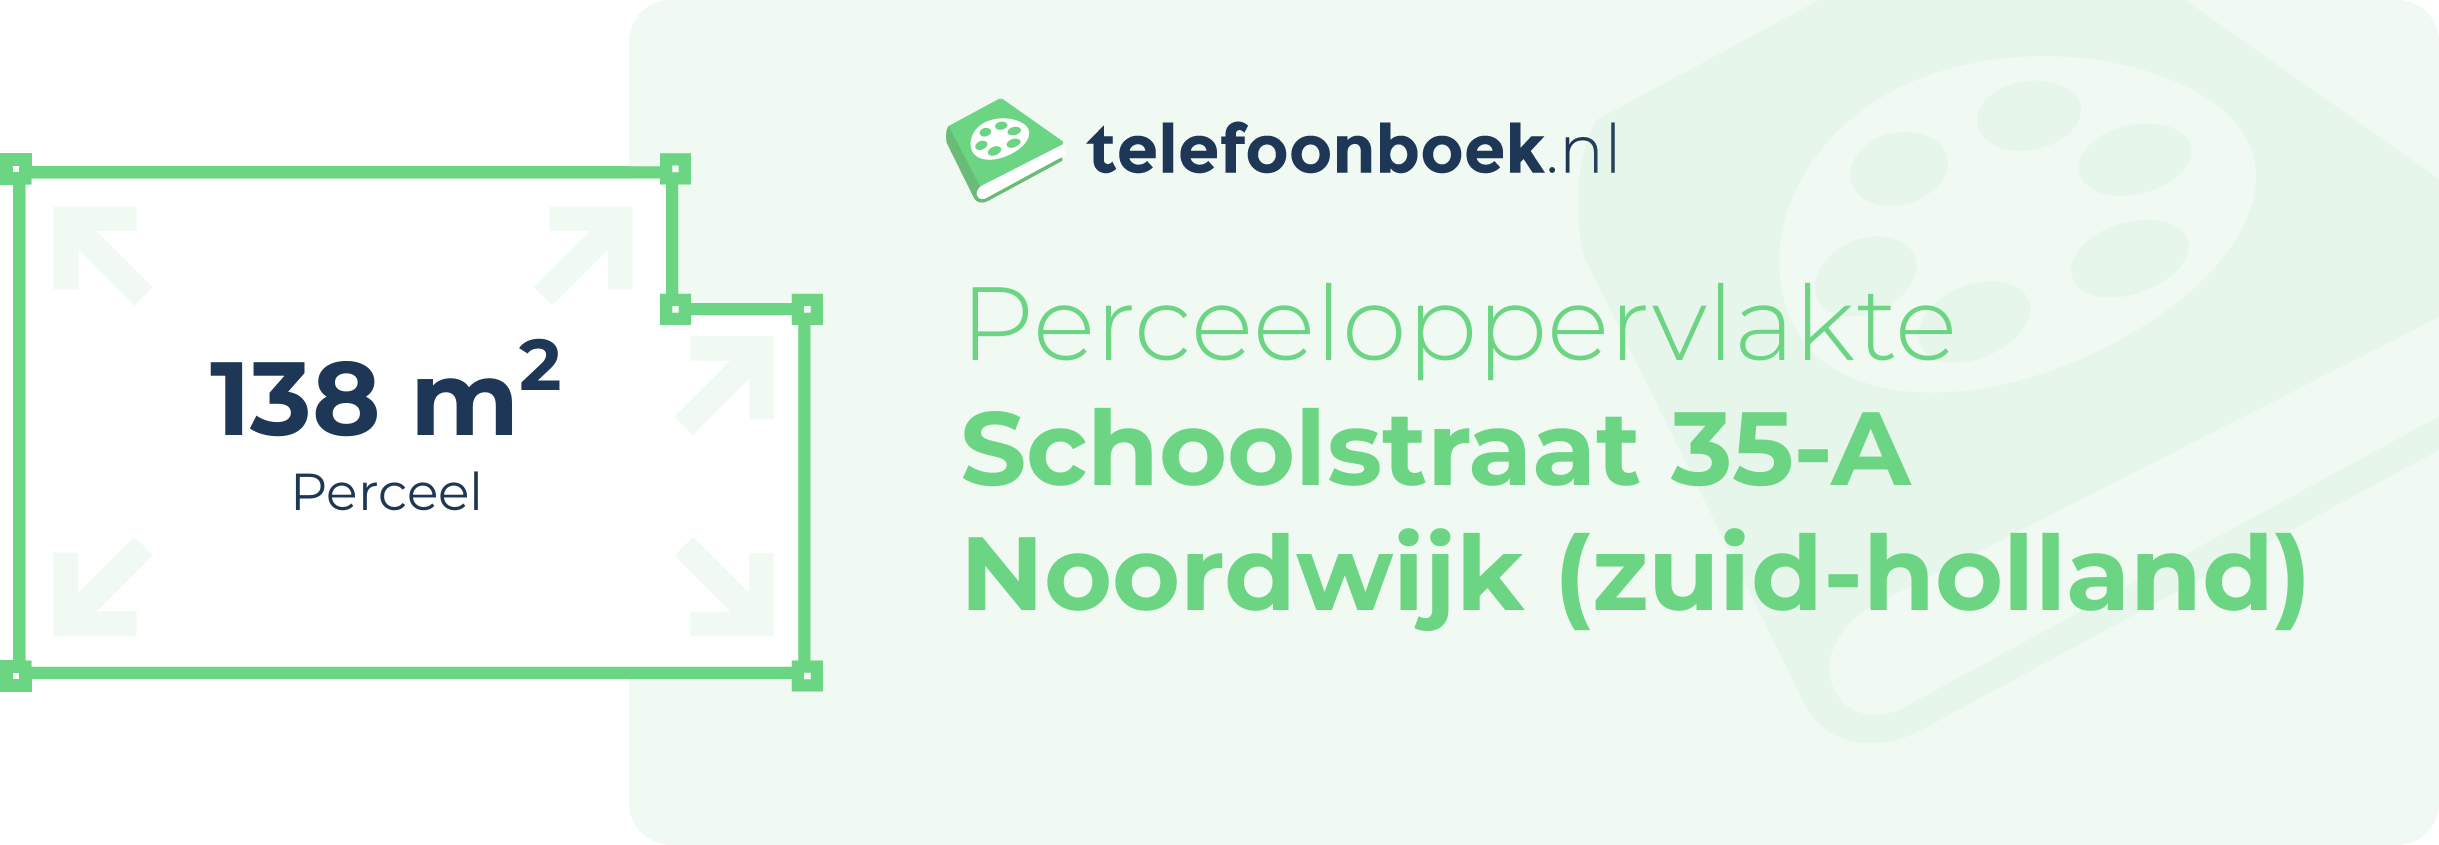 Perceeloppervlakte Schoolstraat 35-A Noordwijk (Zuid-Holland)